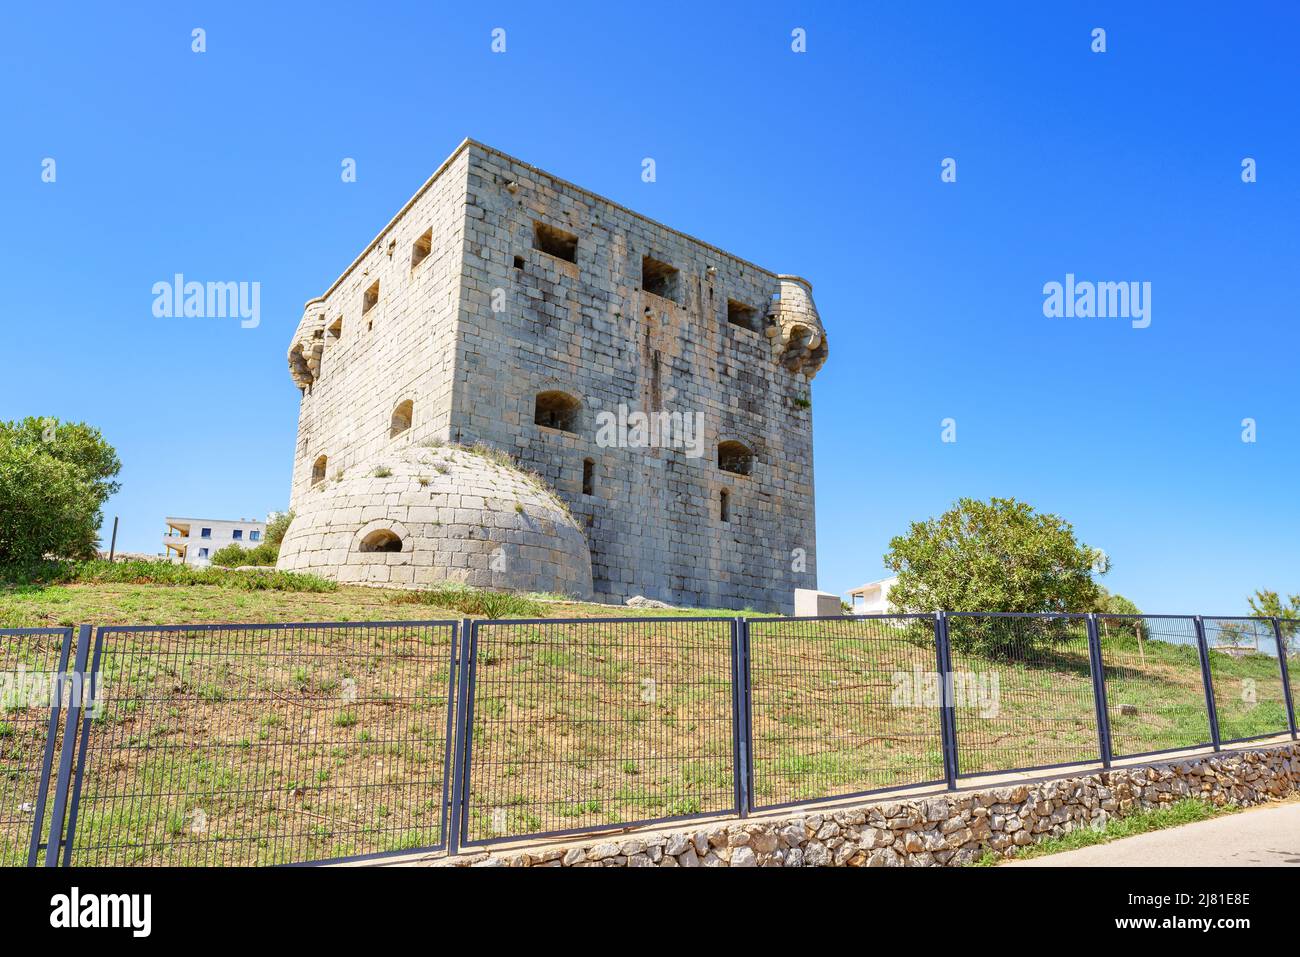 Mittelalterliche Festung an der spanischen Mittelmeerküste bekannt als Torre del Rey in Oropesa del Mar, Region Valencia, Spanien Stockfoto